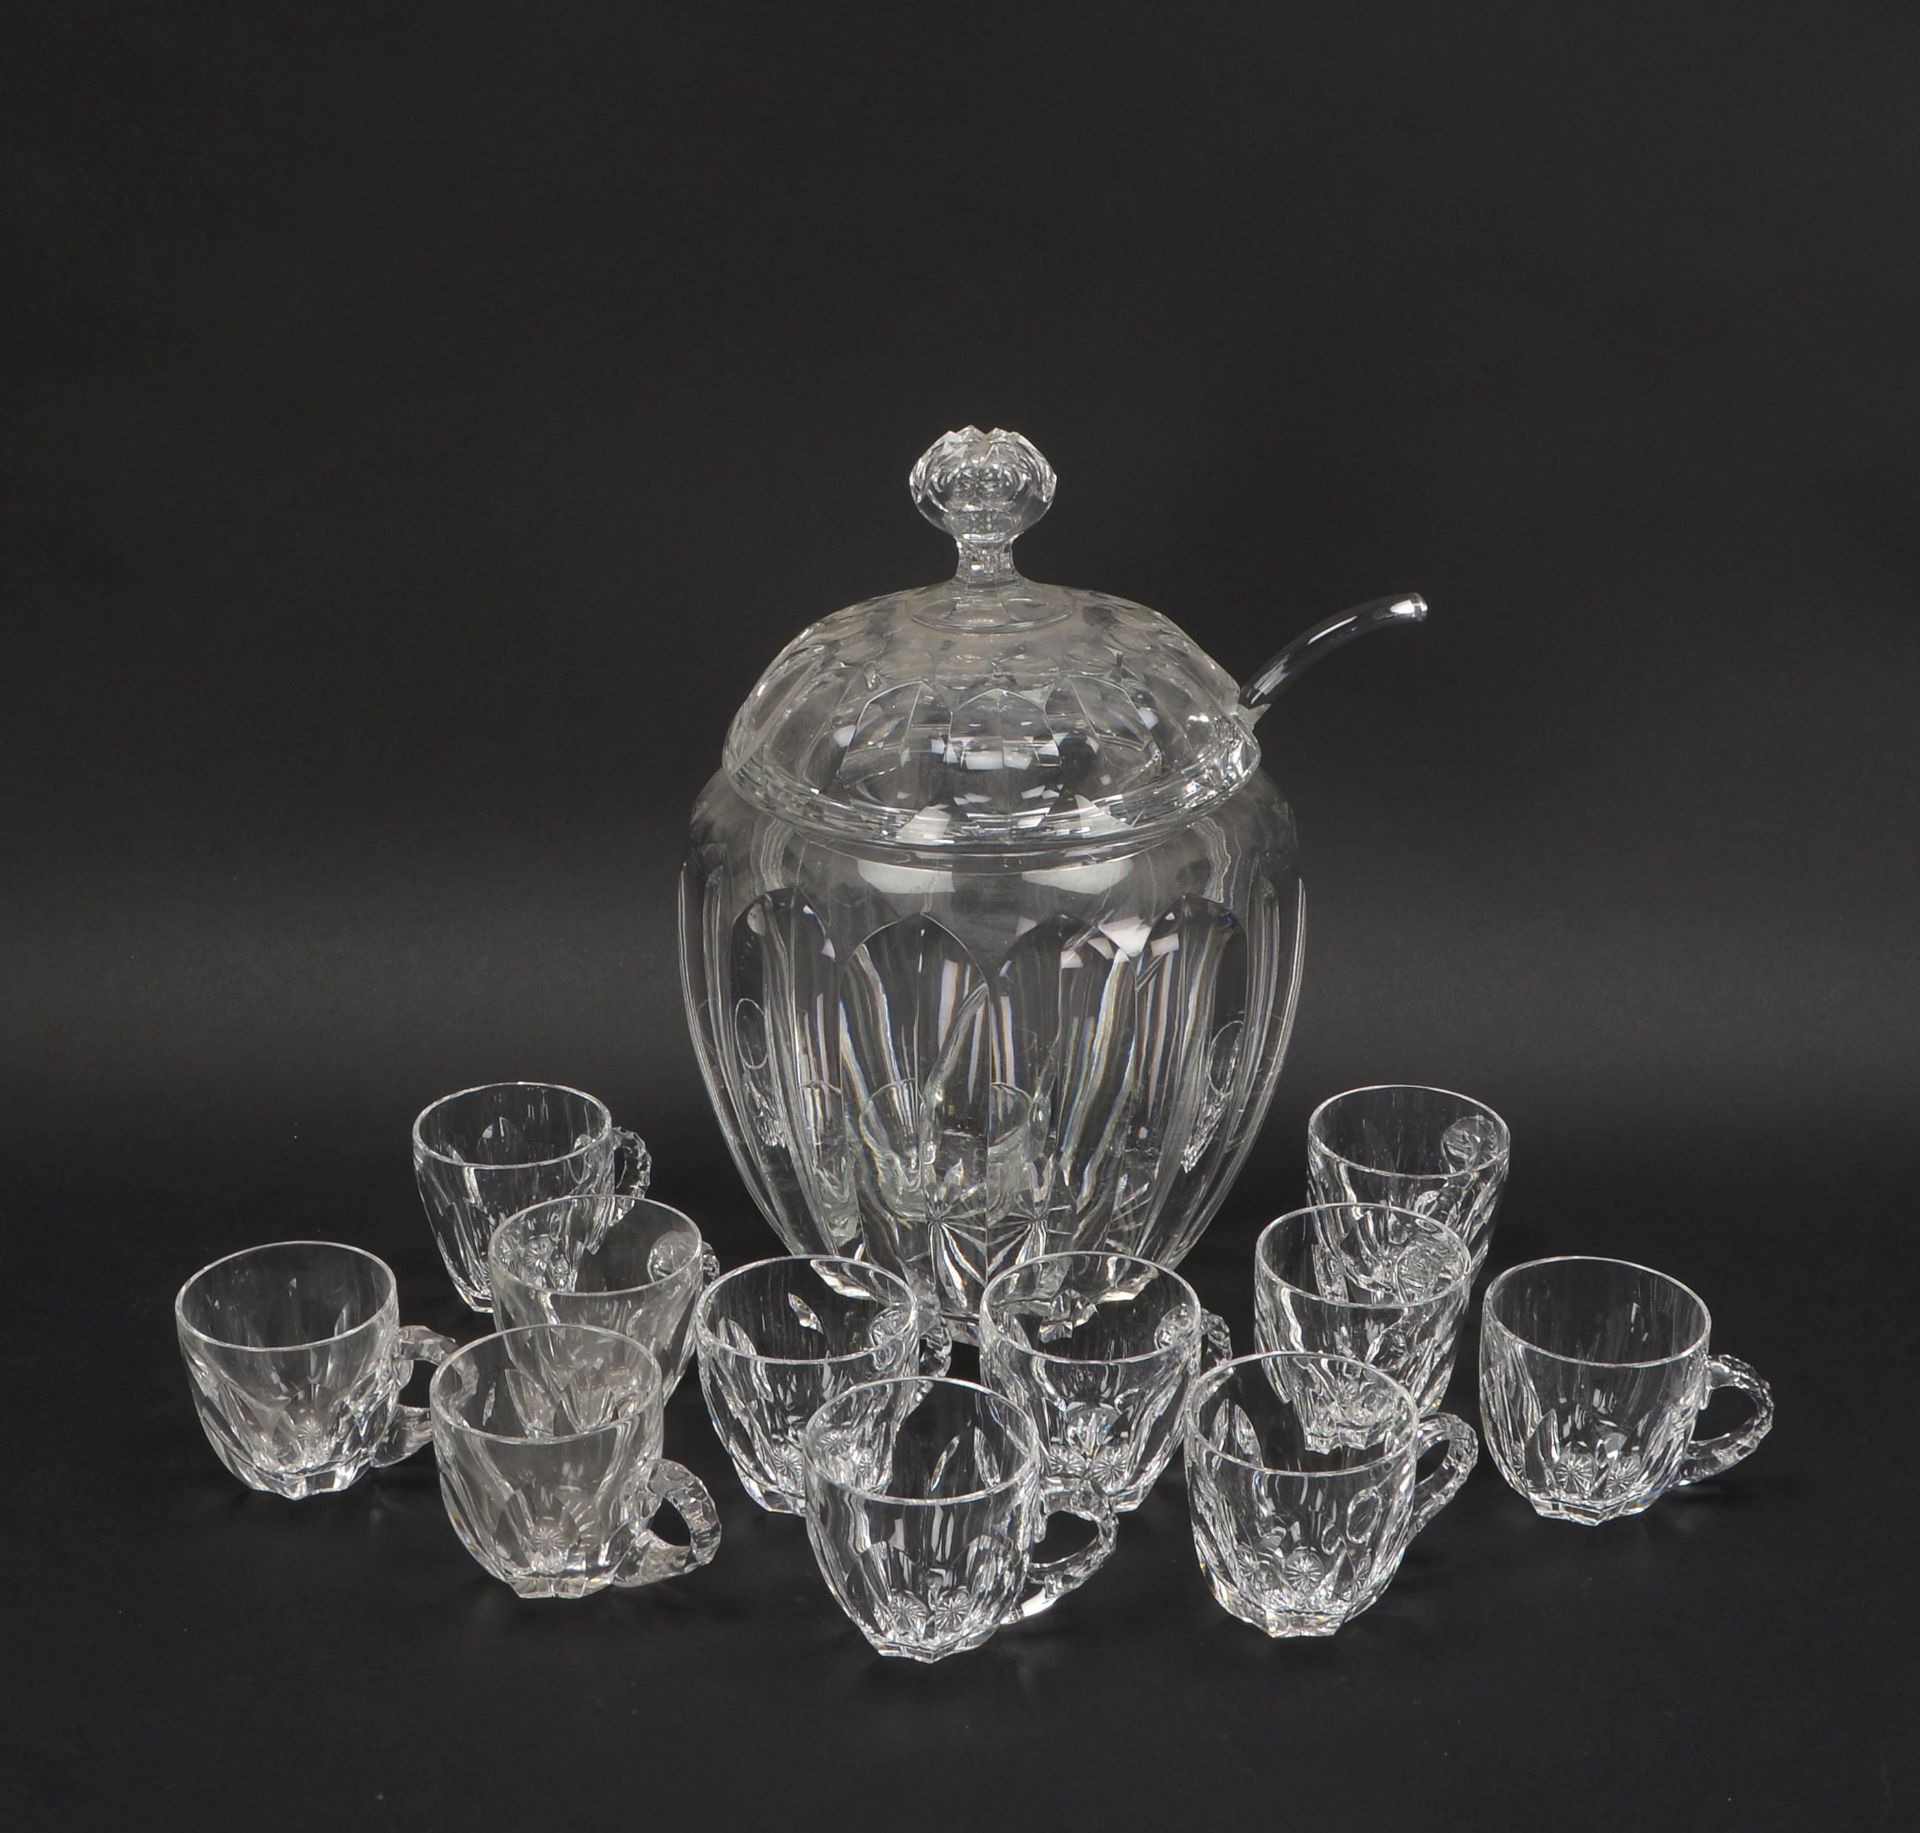 Glasbowlen-Set, Bleikristall, 13-teilig: 1 Bowlengef&auml;&szlig; mit 11-teiligem Gl&auml;sersatz, m - Image 2 of 2